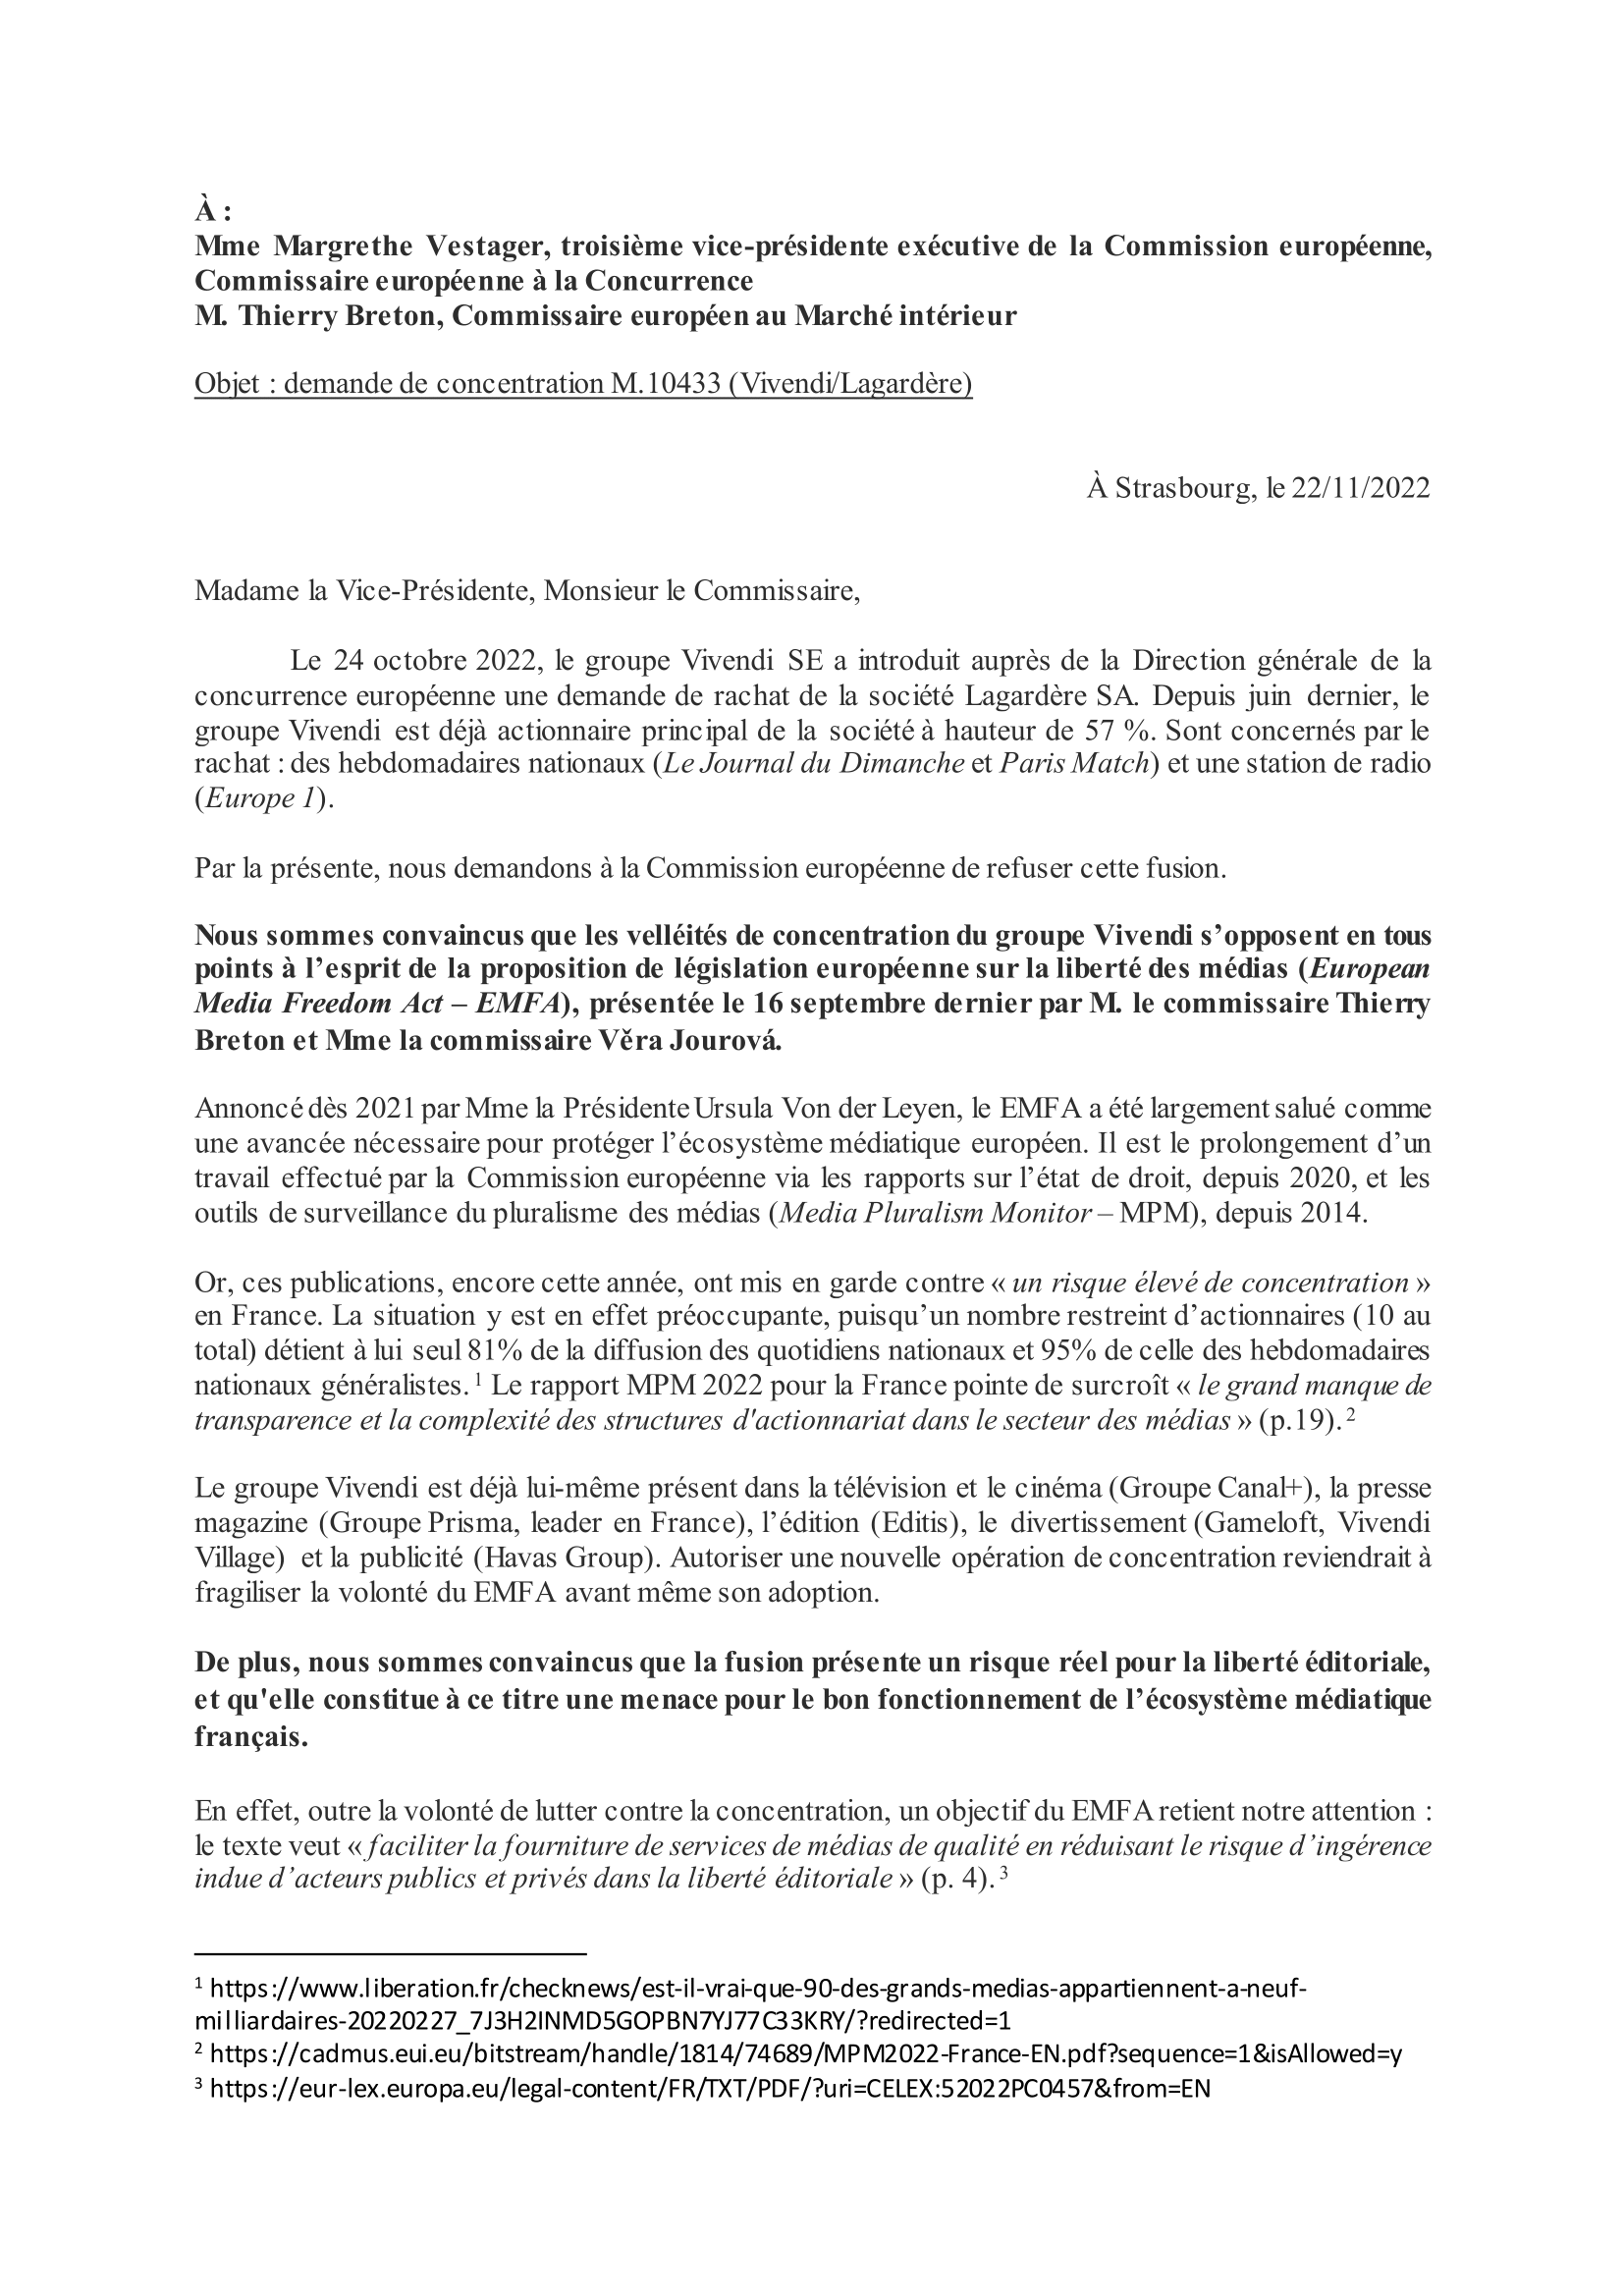 CORMAND - Lettre aux commissaires européens Mme Vestager et M. Breton - FR-1.png